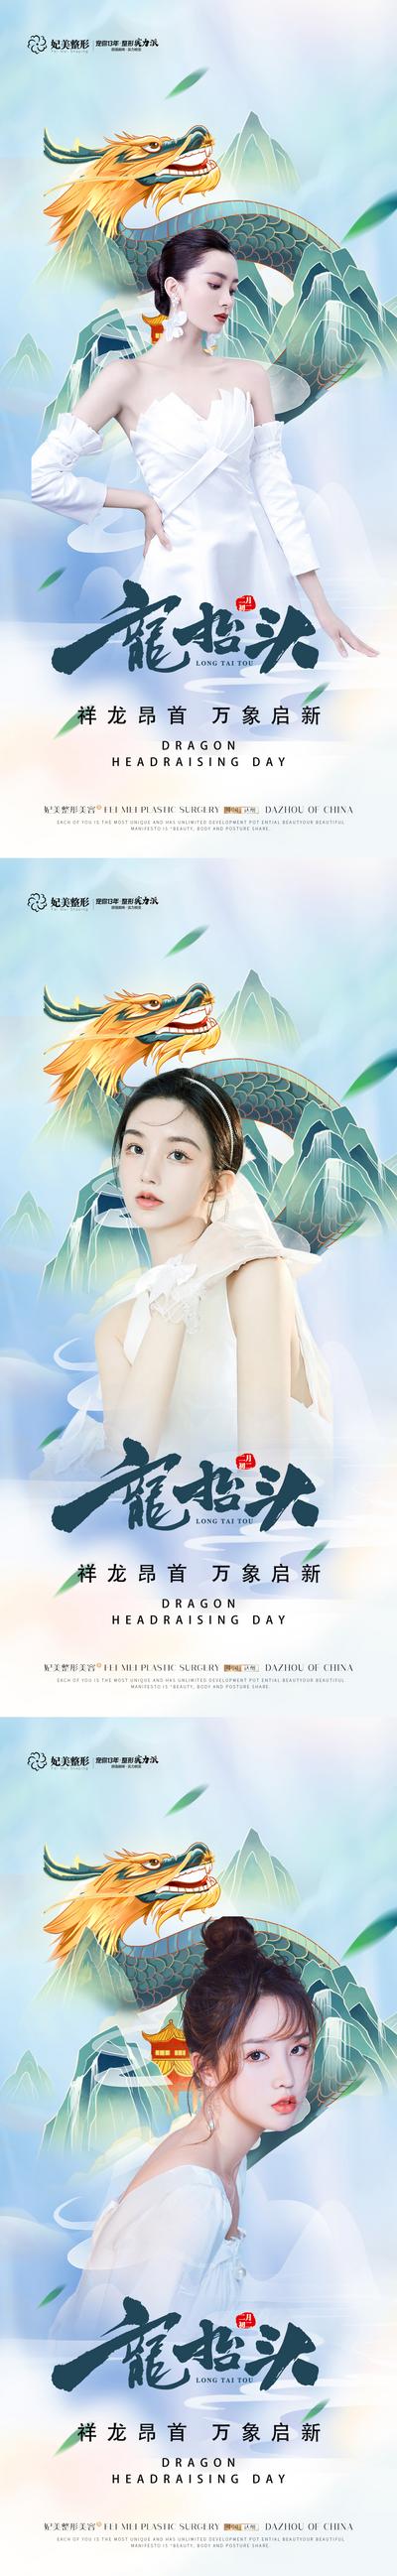 南门网 海报 整形 医美 美容 龙抬头 中国传统节日 人物